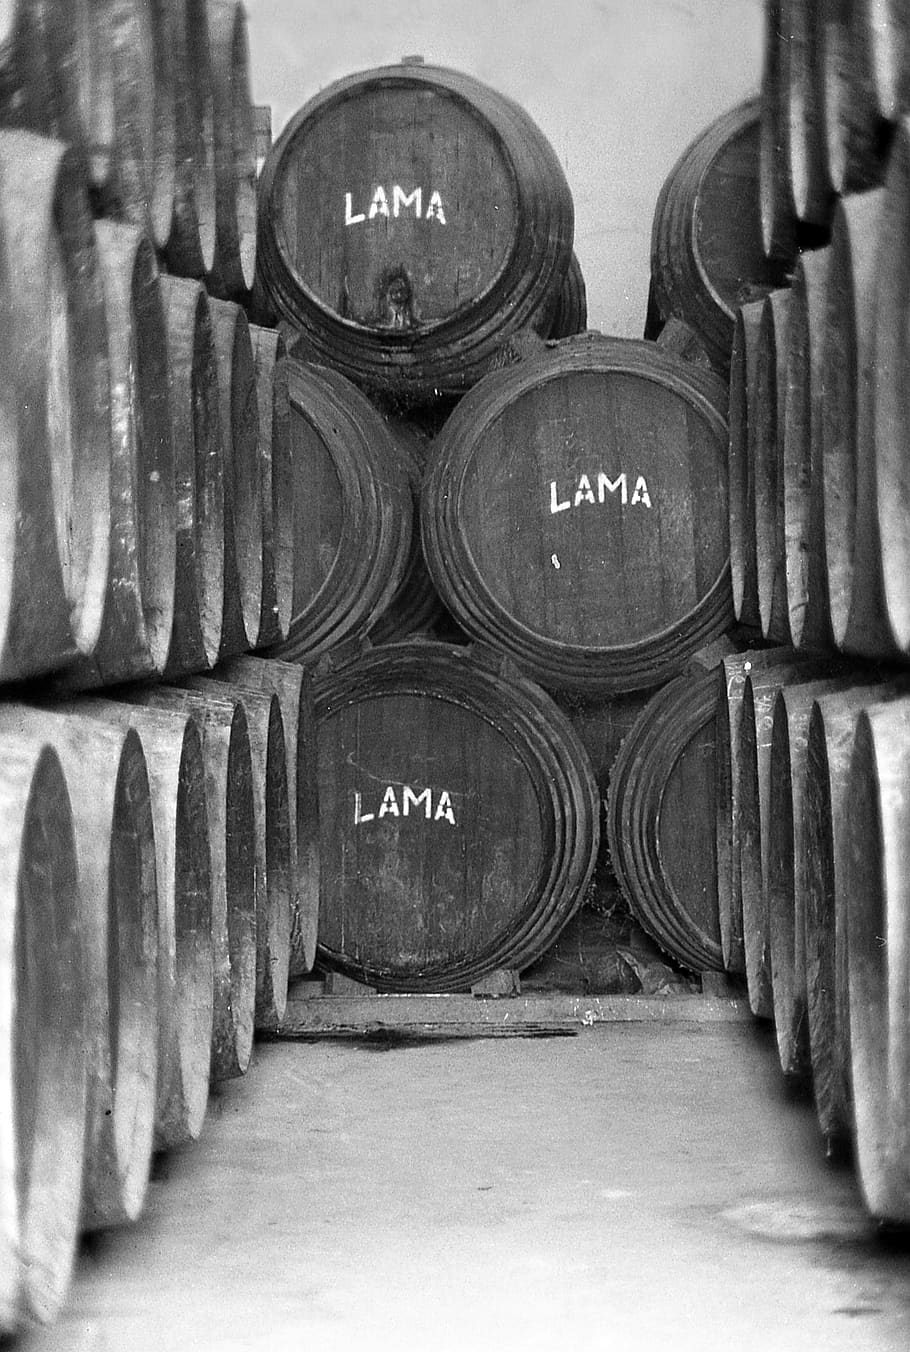 winery, barrel, wine, cask, barrels, andana, text, communication, indoors, cellar